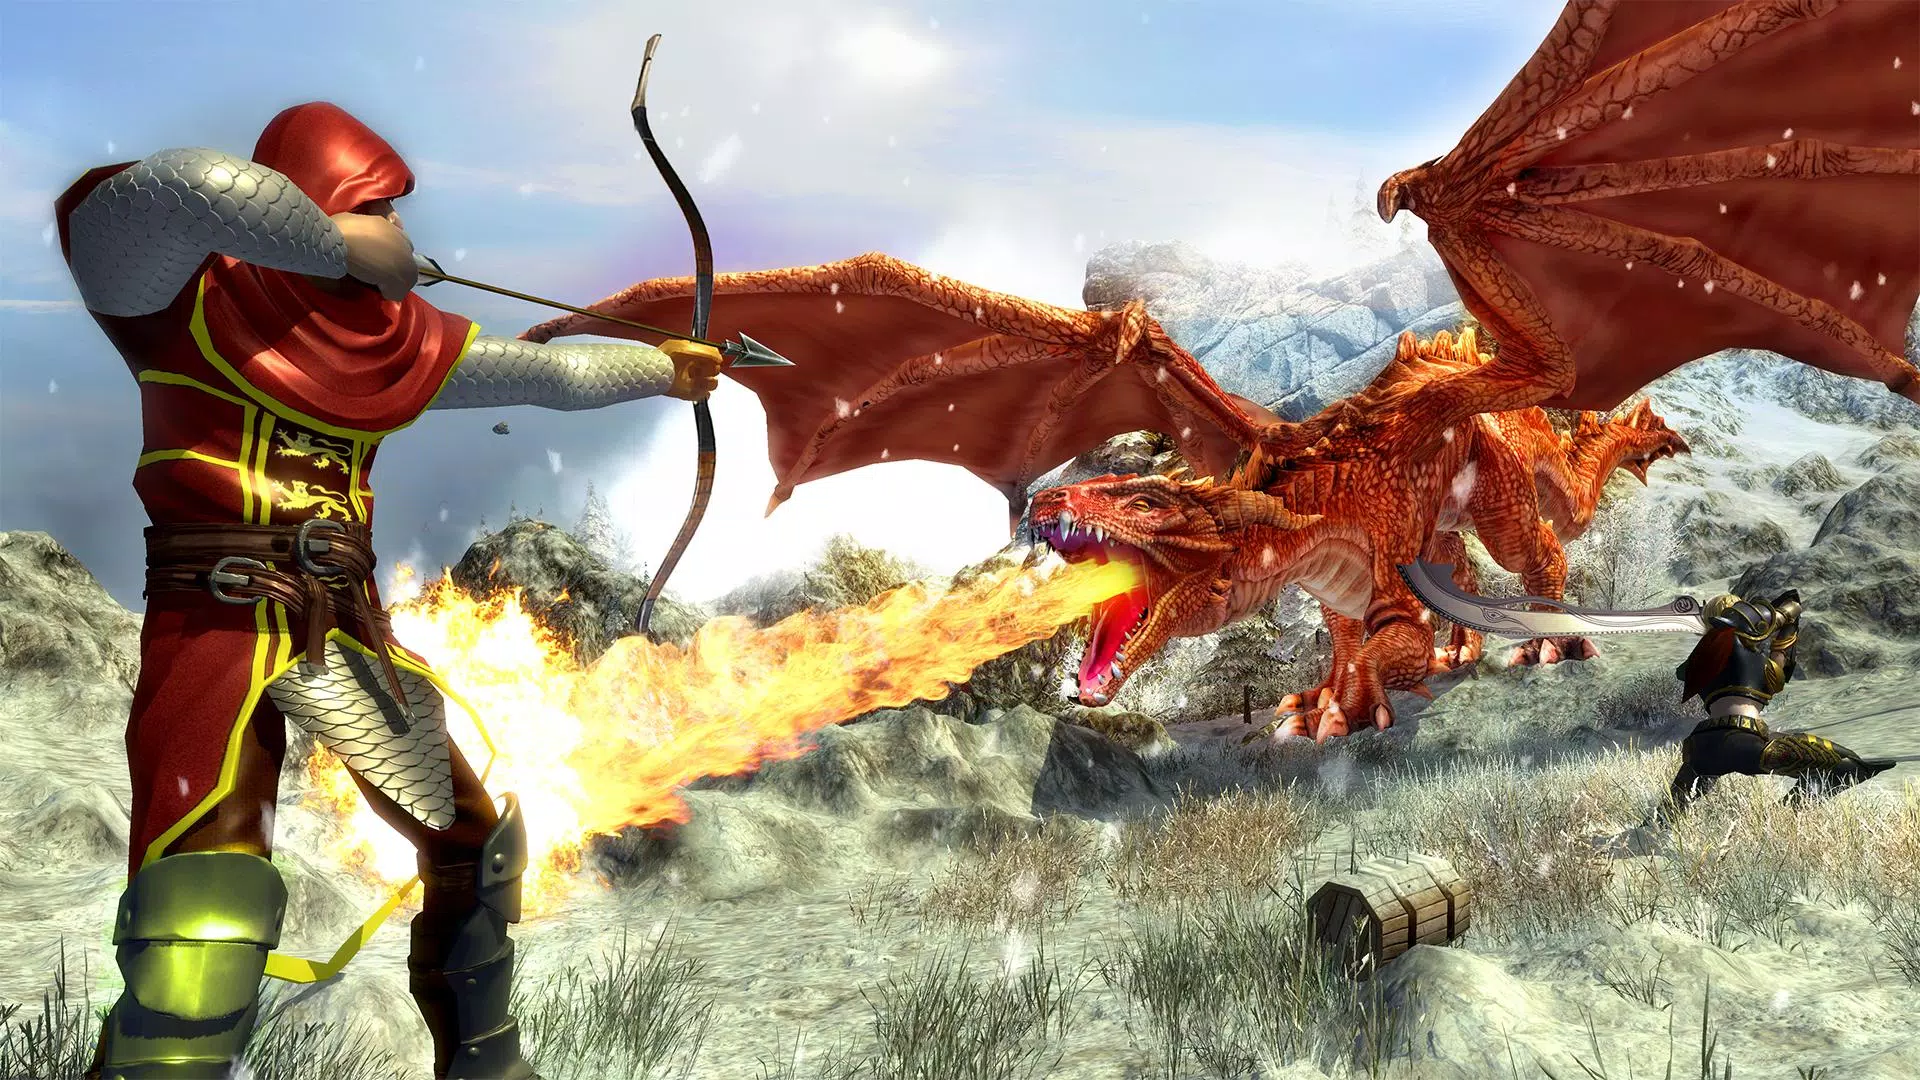 Download do APK de jogos de voo de dragão mágico para Android